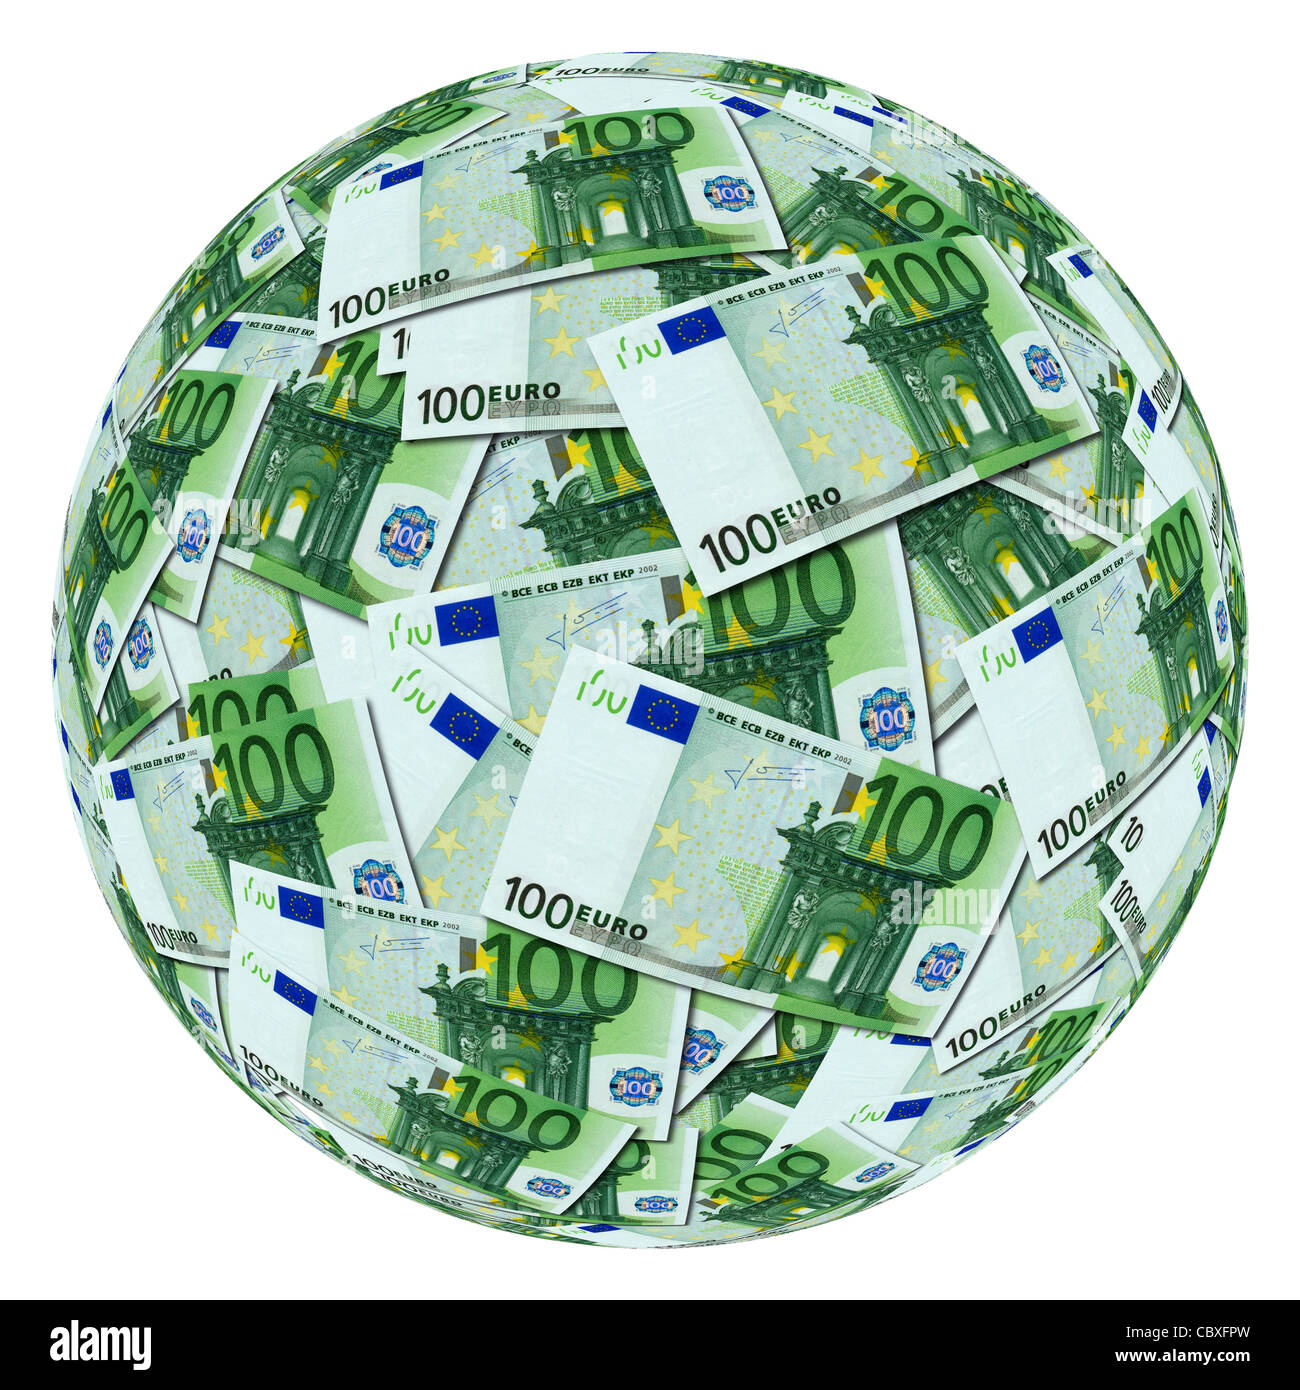 Eine Kugel mit Banknoten von 100 Euro.  Sphère Composée À Partir de Karten de Banque de 100 Euro. Stockfoto